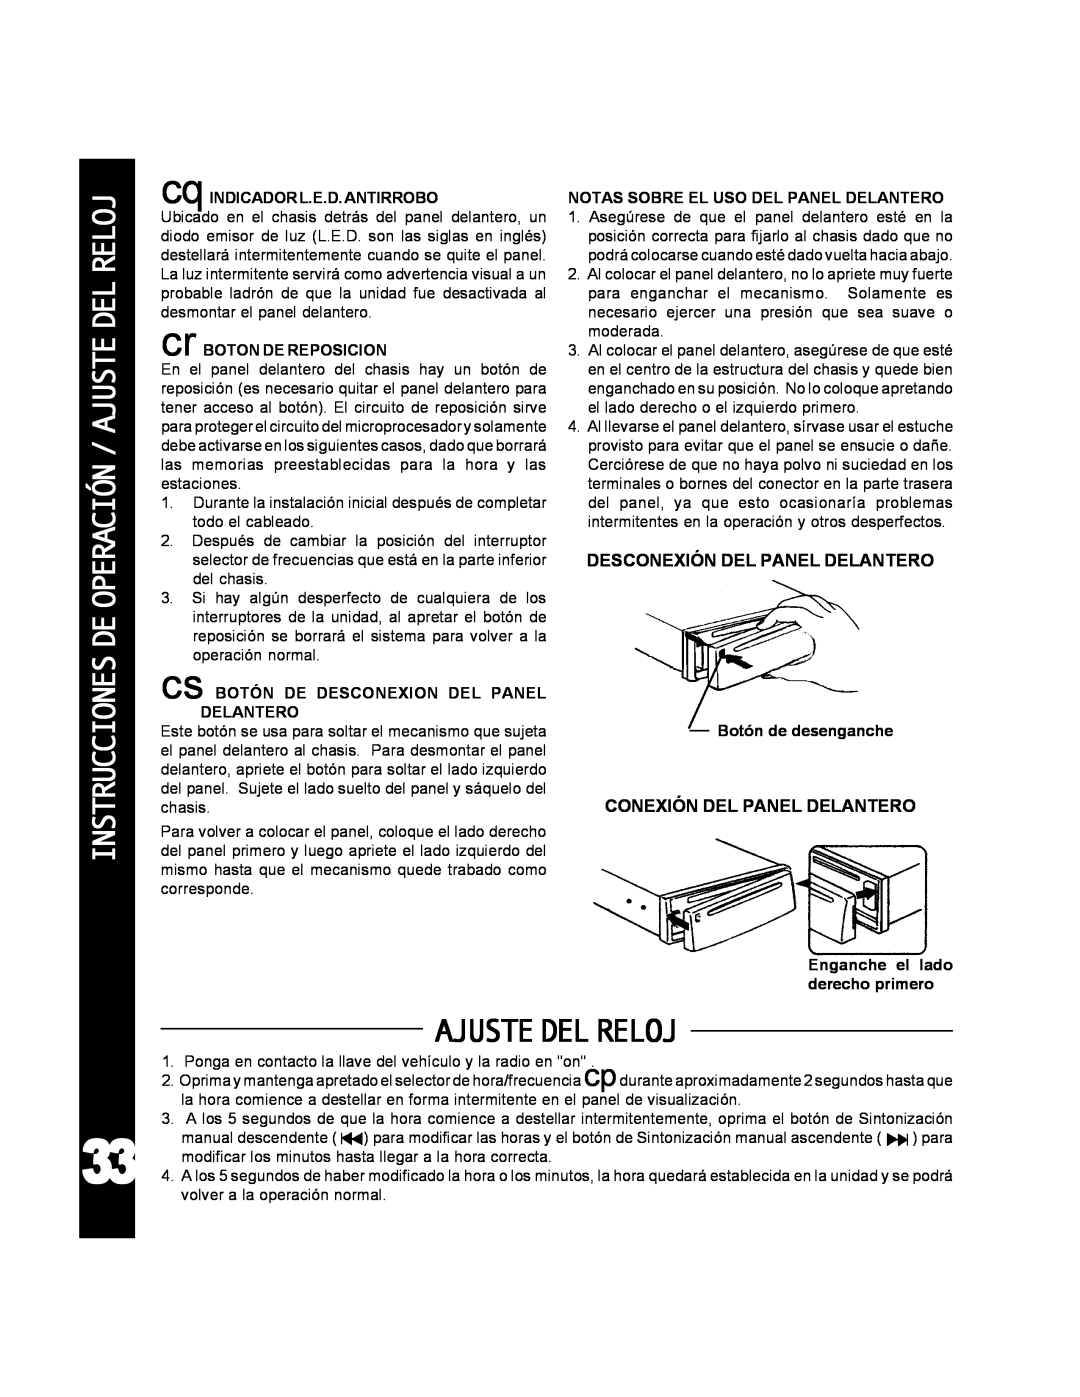 Audiovox ACD-25 manual Instrucciones De Operación / Ajuste Del Reloj, Ajustedelreloj 